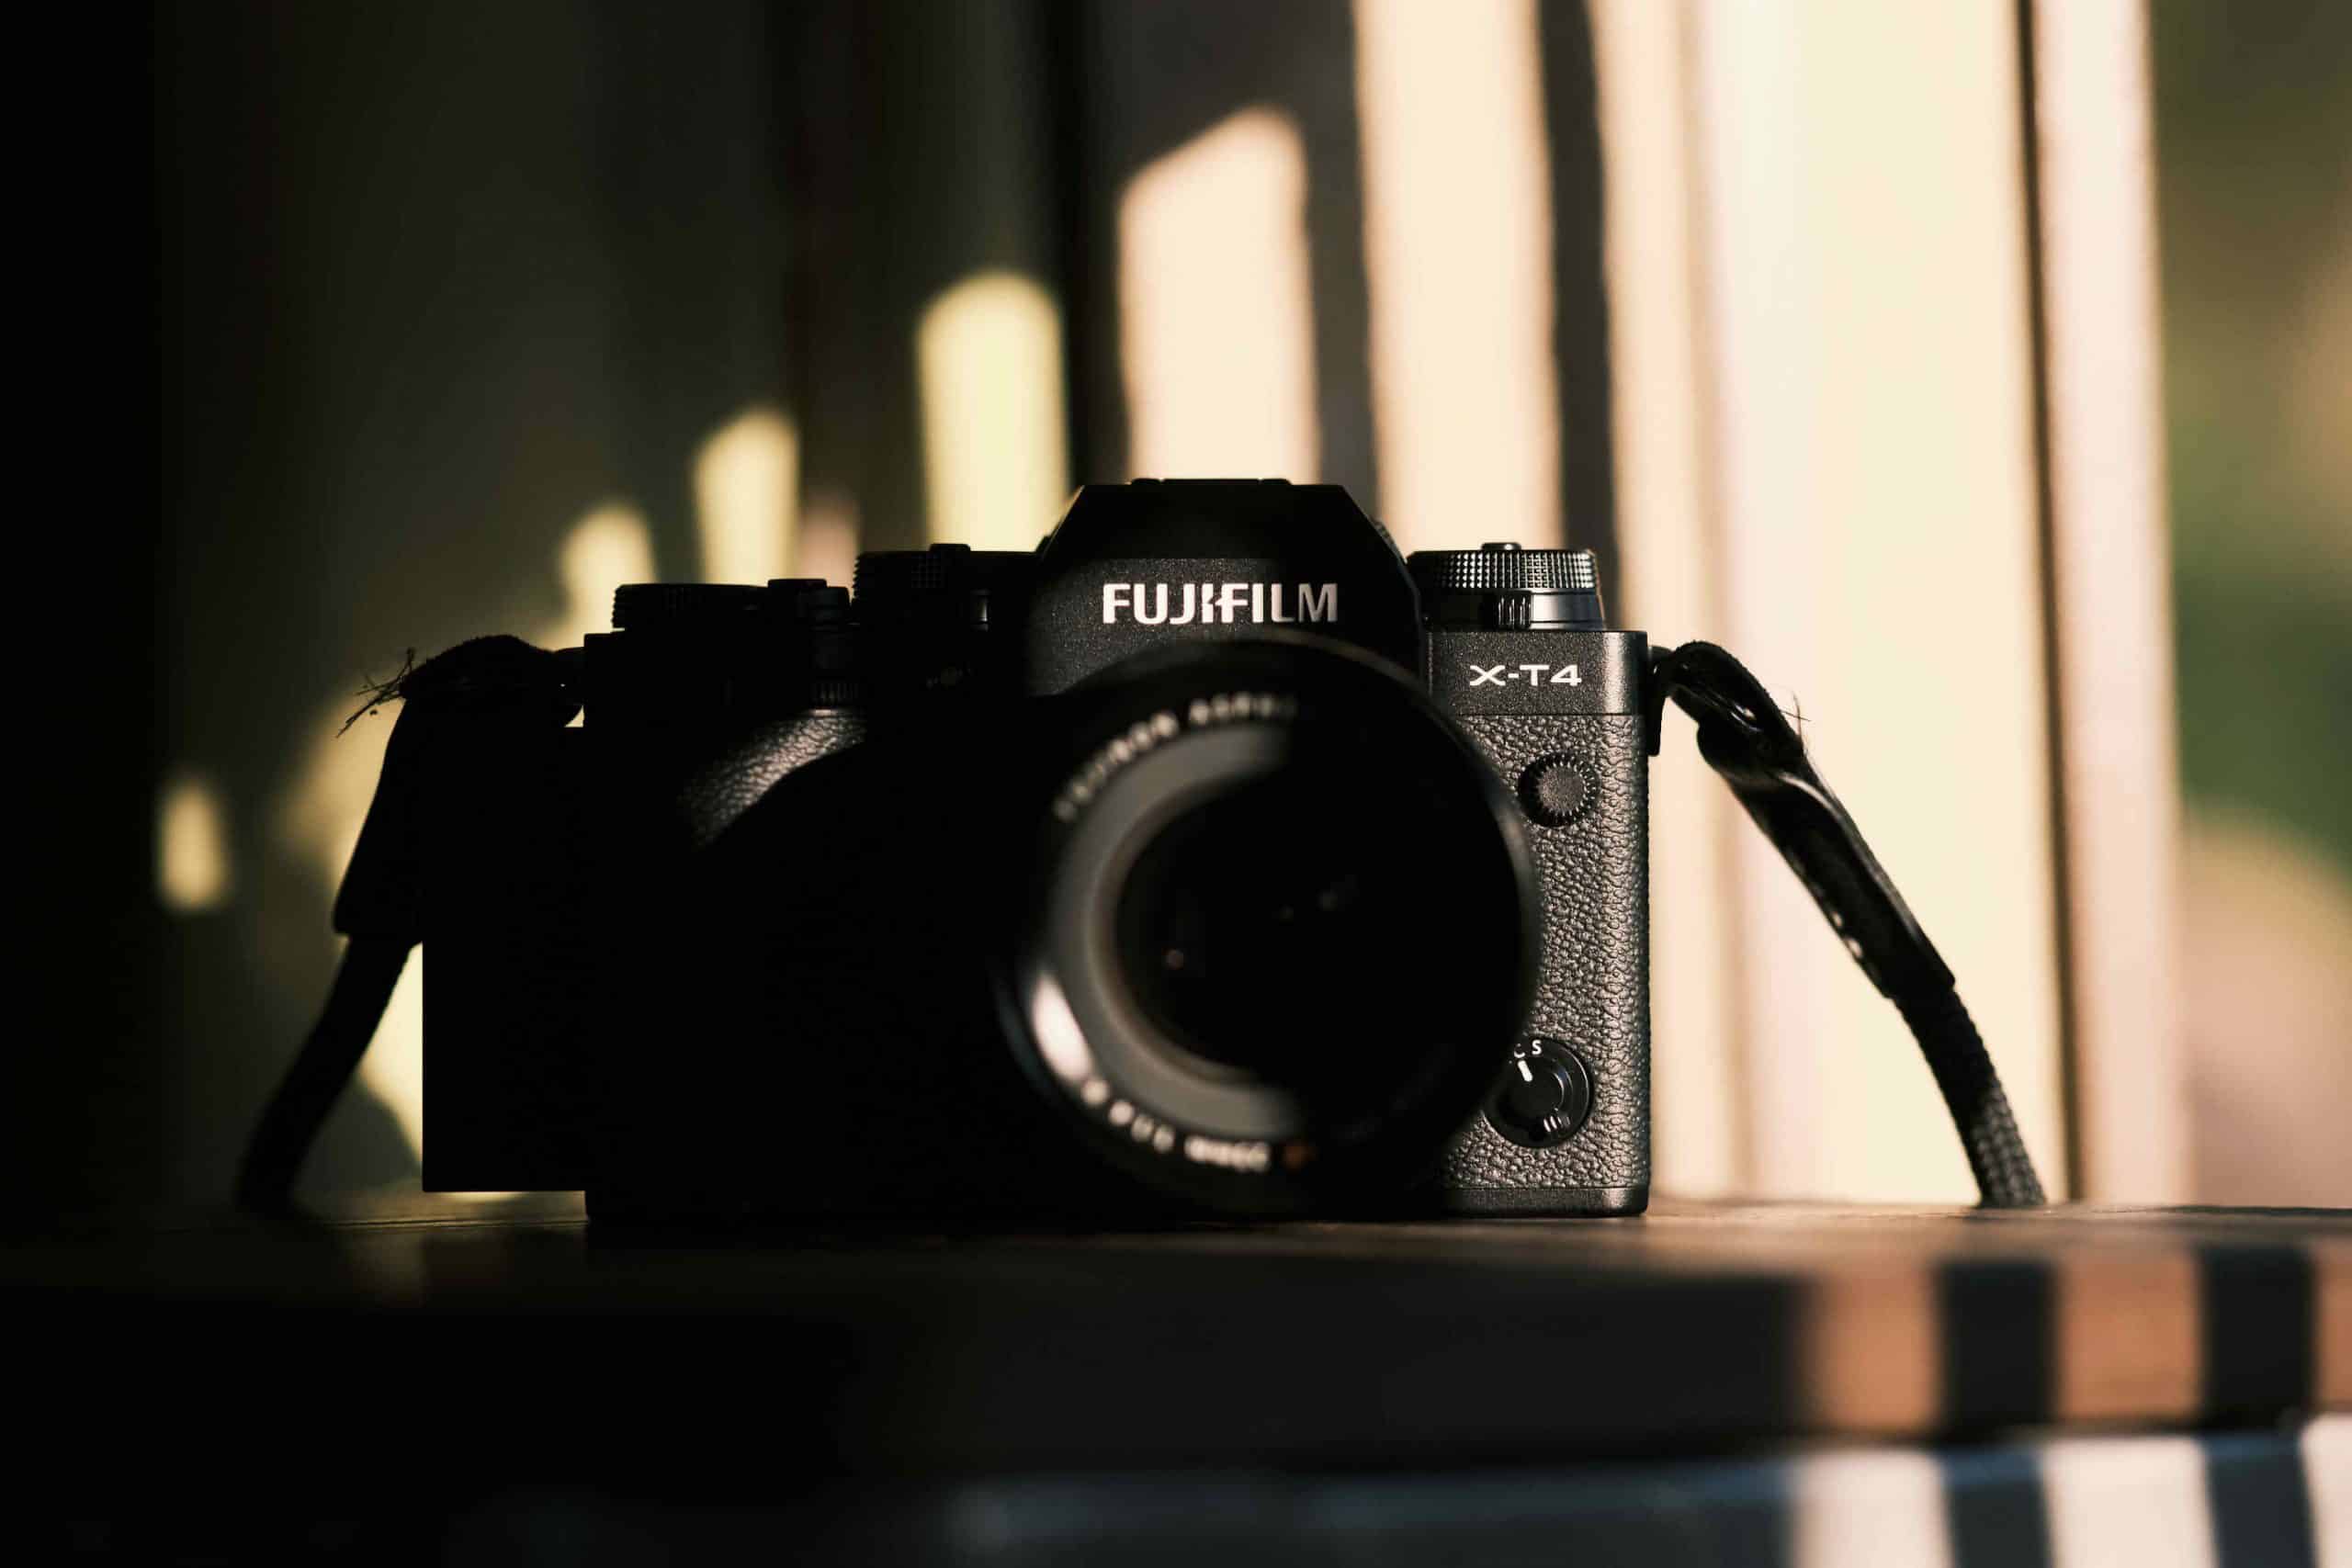 Fujifilm tung cập nhật firmware sửa lỗi cho máy ảnh mới cho GFX 100 và X-T4